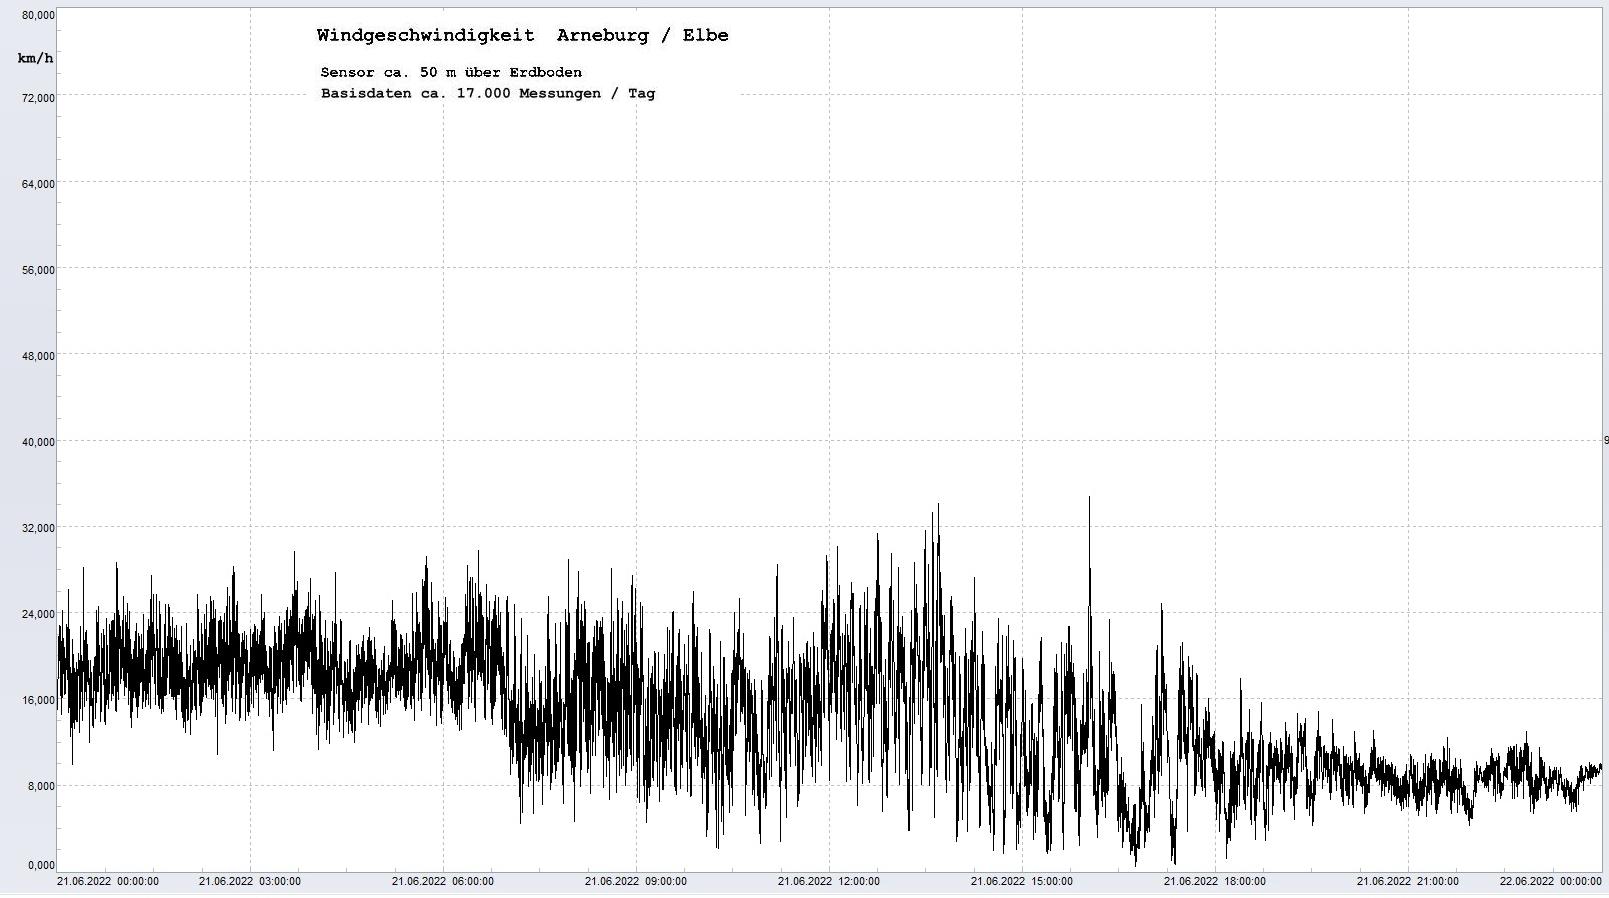 Arneburg Tages-Diagramm Winddaten, 21.06.2022
  Diagramm, Sensor auf Gebäude, ca. 50 m über Erdboden, Basis: 5s-Aufzeichnung